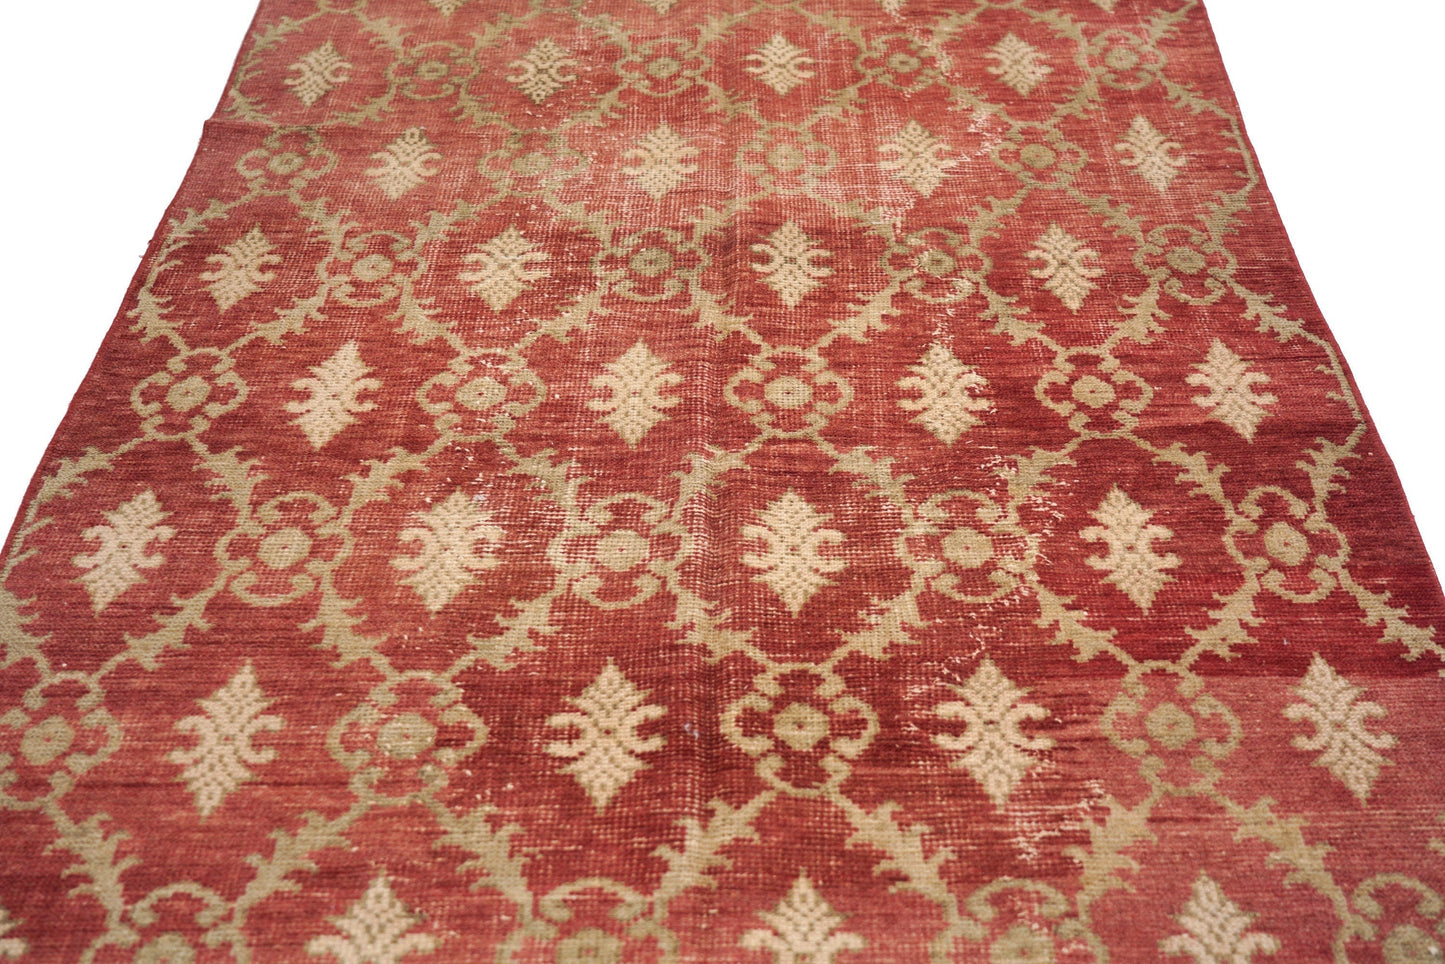 4x8 Vintage Oushak Turkish Rug, Floral Red Gold Area Handmade Carpet Rug, Bohemian rug , Living room rug, Entryway,Rug, 4048